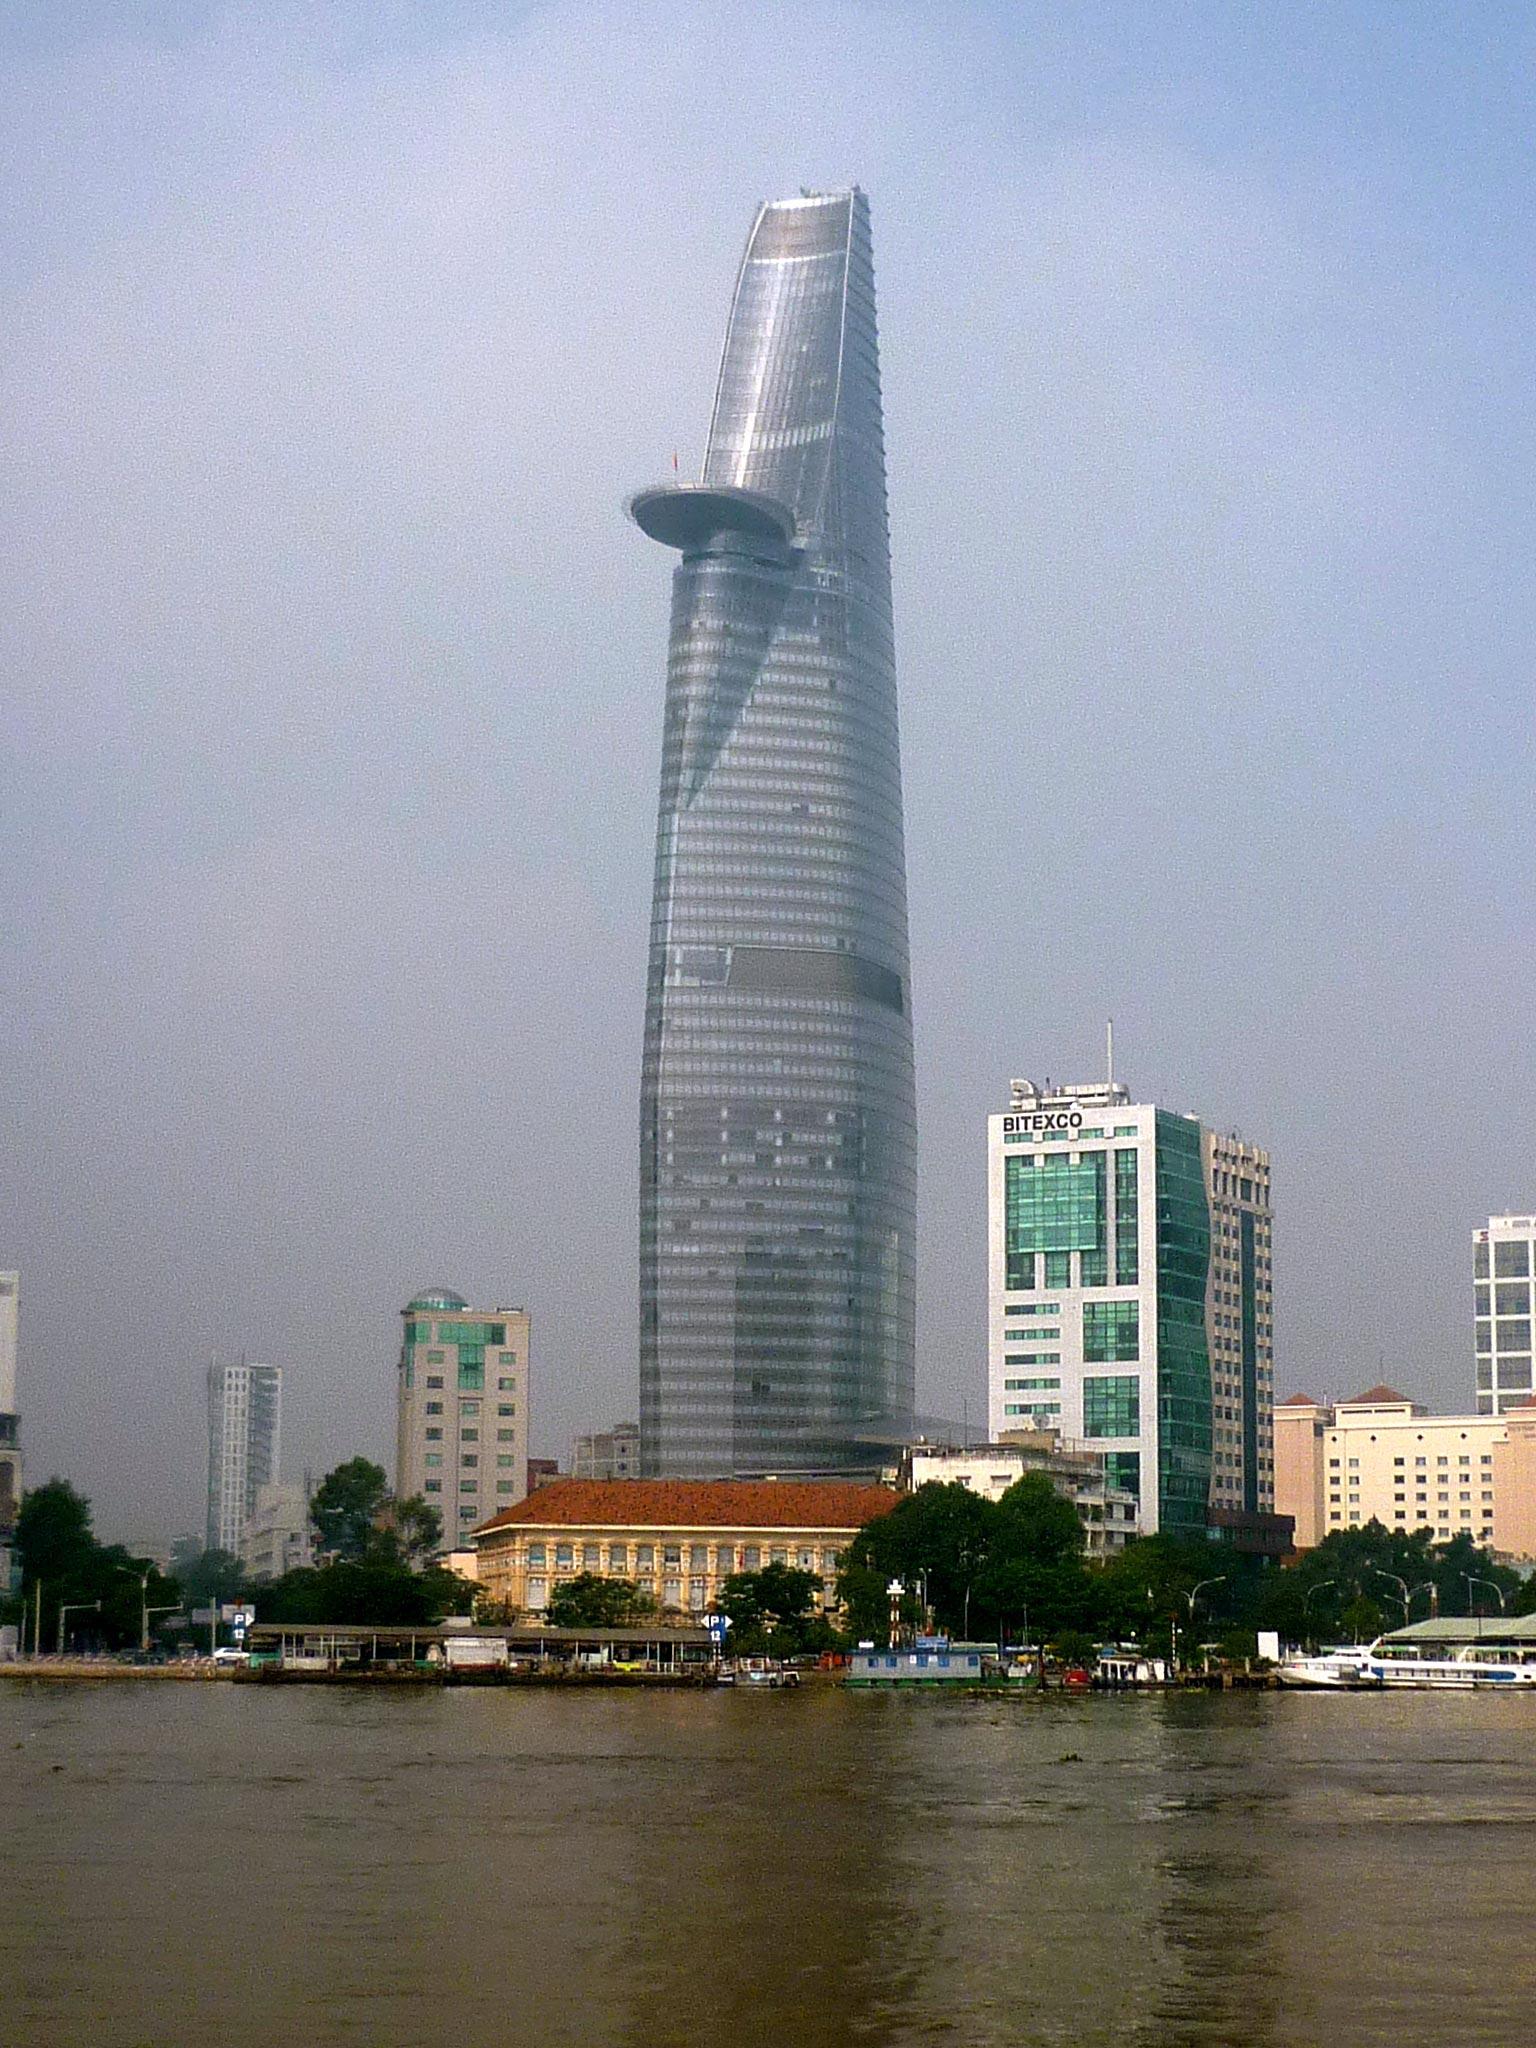 5. BITEXCO FINANCIAL TOWER, HO CHI MINH CITY, VIETNAM Designen är tänkt att likna landets nationalblomma lotusen. Åk upp till 47:e våningen och få 360 graders utstikt över stan. Helikopterplattan på 50:e våningen sticker ut. Höjd: 262 meter. Klar: 2010. Byggkostnad: 1,5 miljarder kronor. Kolla in vad det kostar att resa till Ho Chi Minh City här!